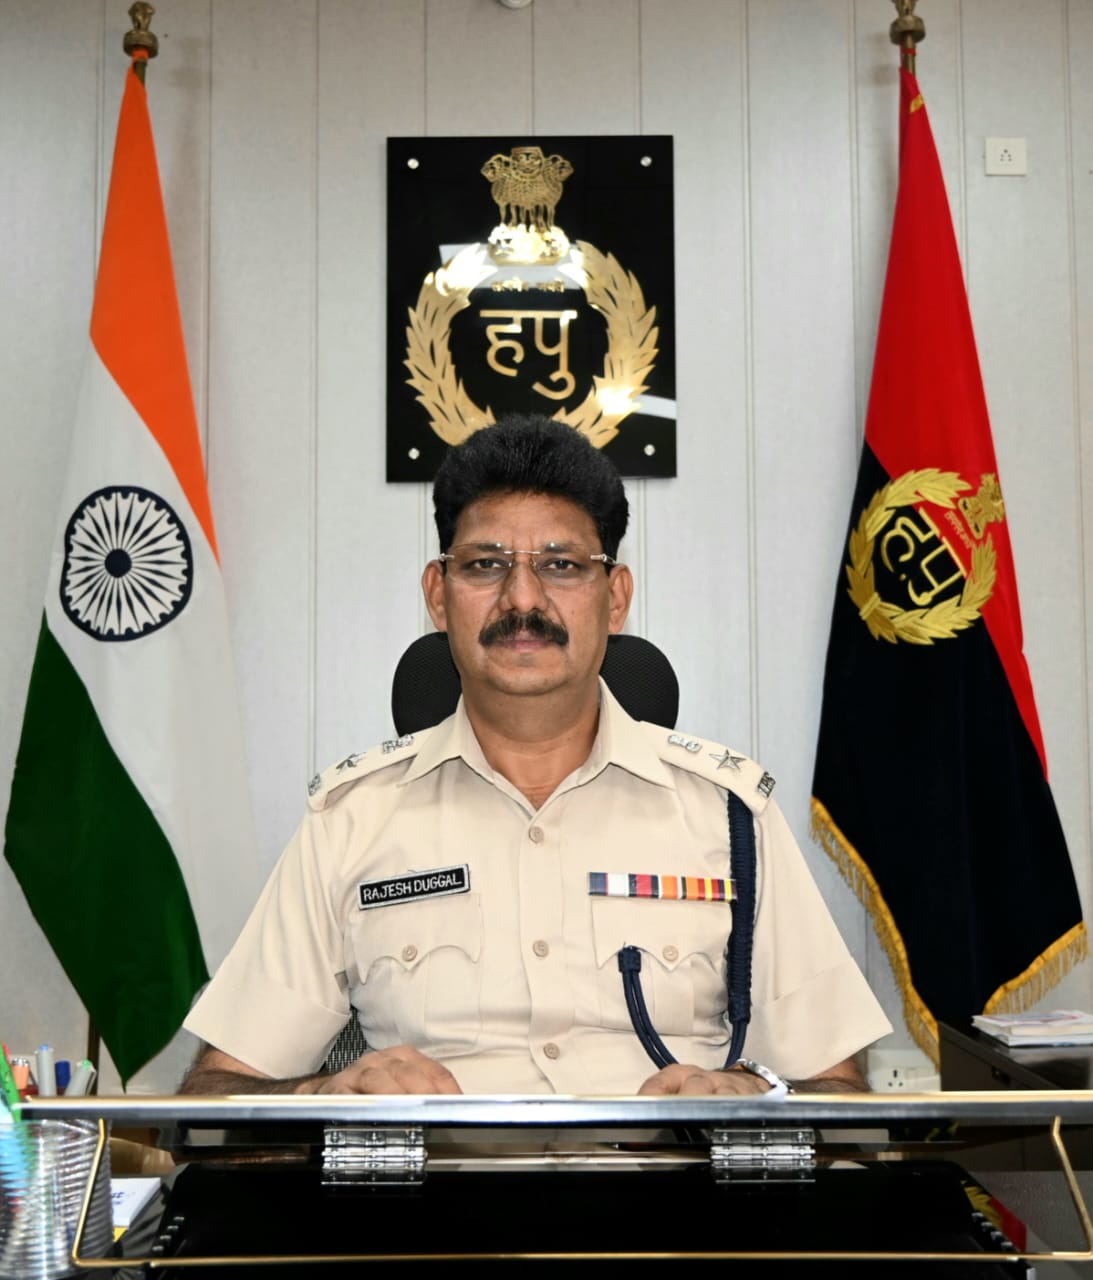 Superintendent of police , palwal ने जिलावासियों को दी रामनवमी की बधाई